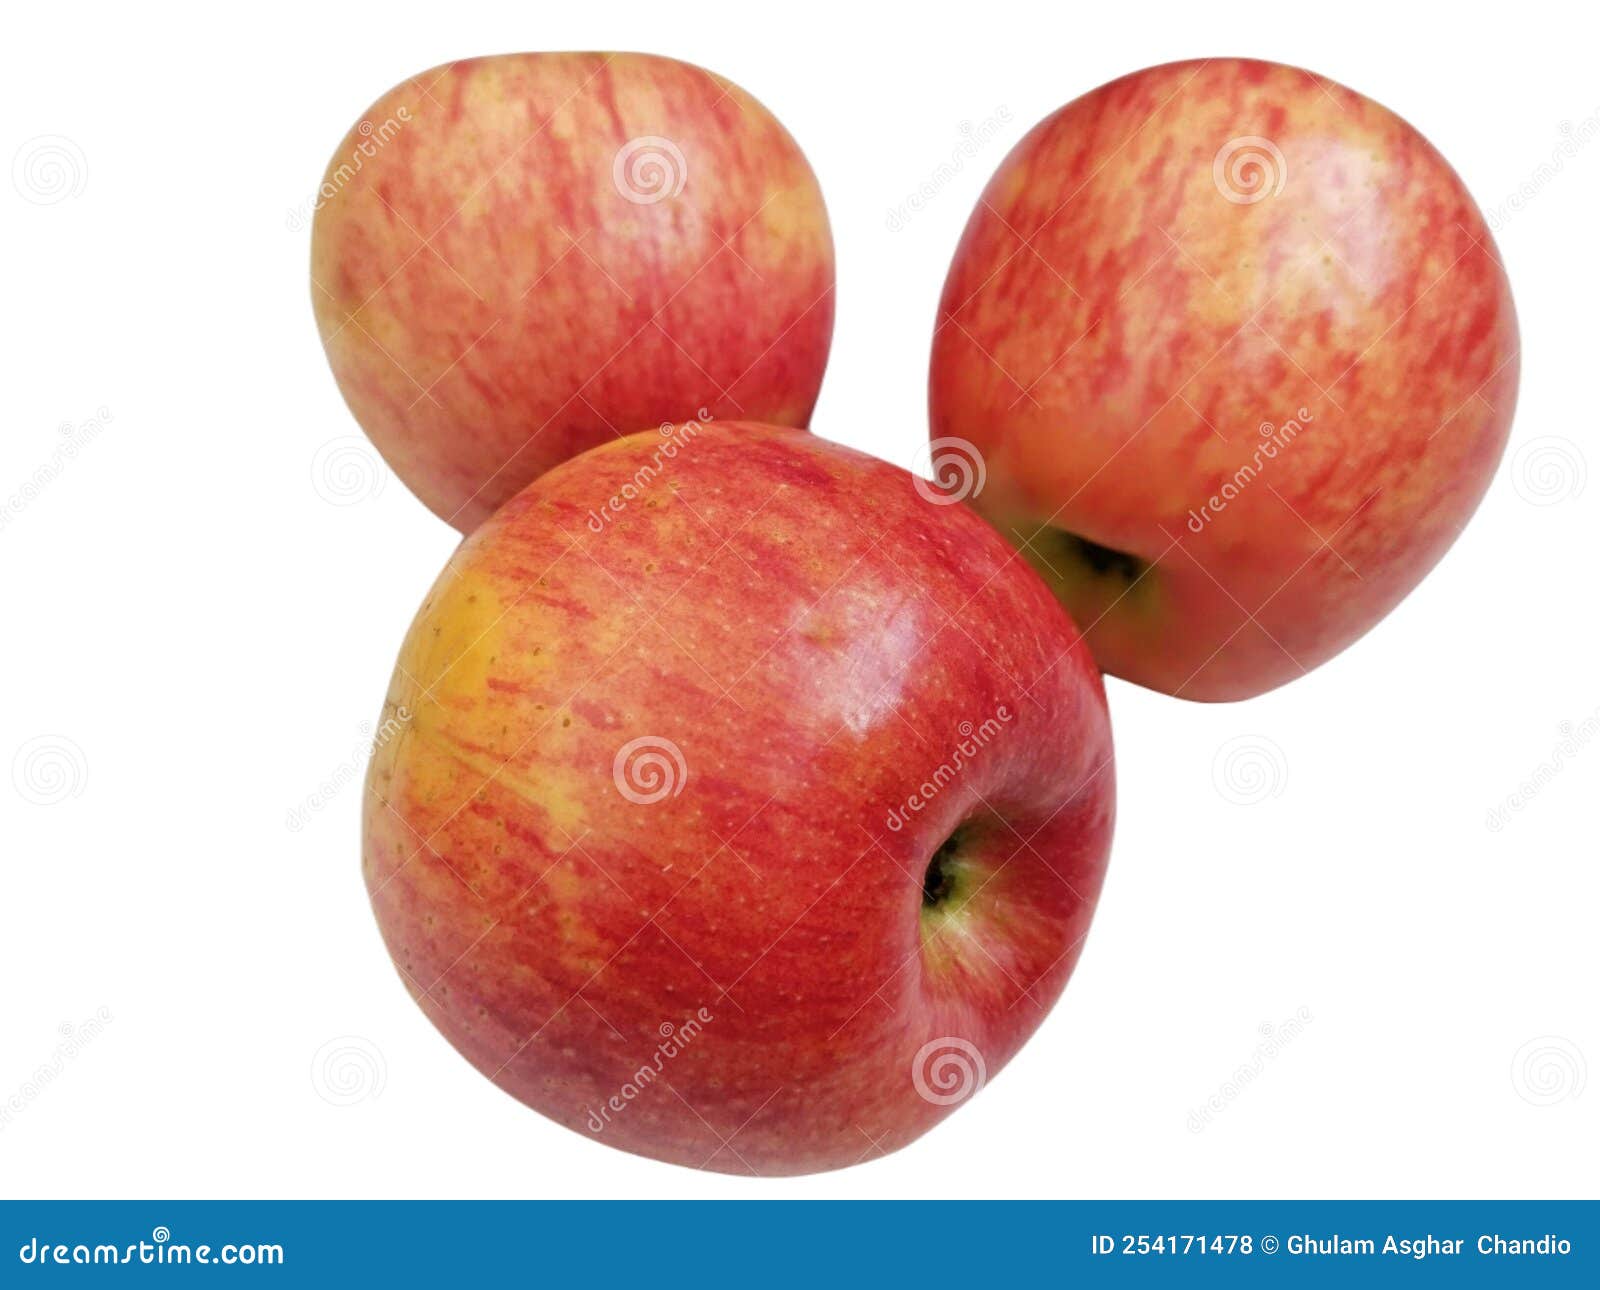 apple, malus domestica, seb, apel, apfel, manzana, la pomme, tafaha, yabloko, ringo no mi